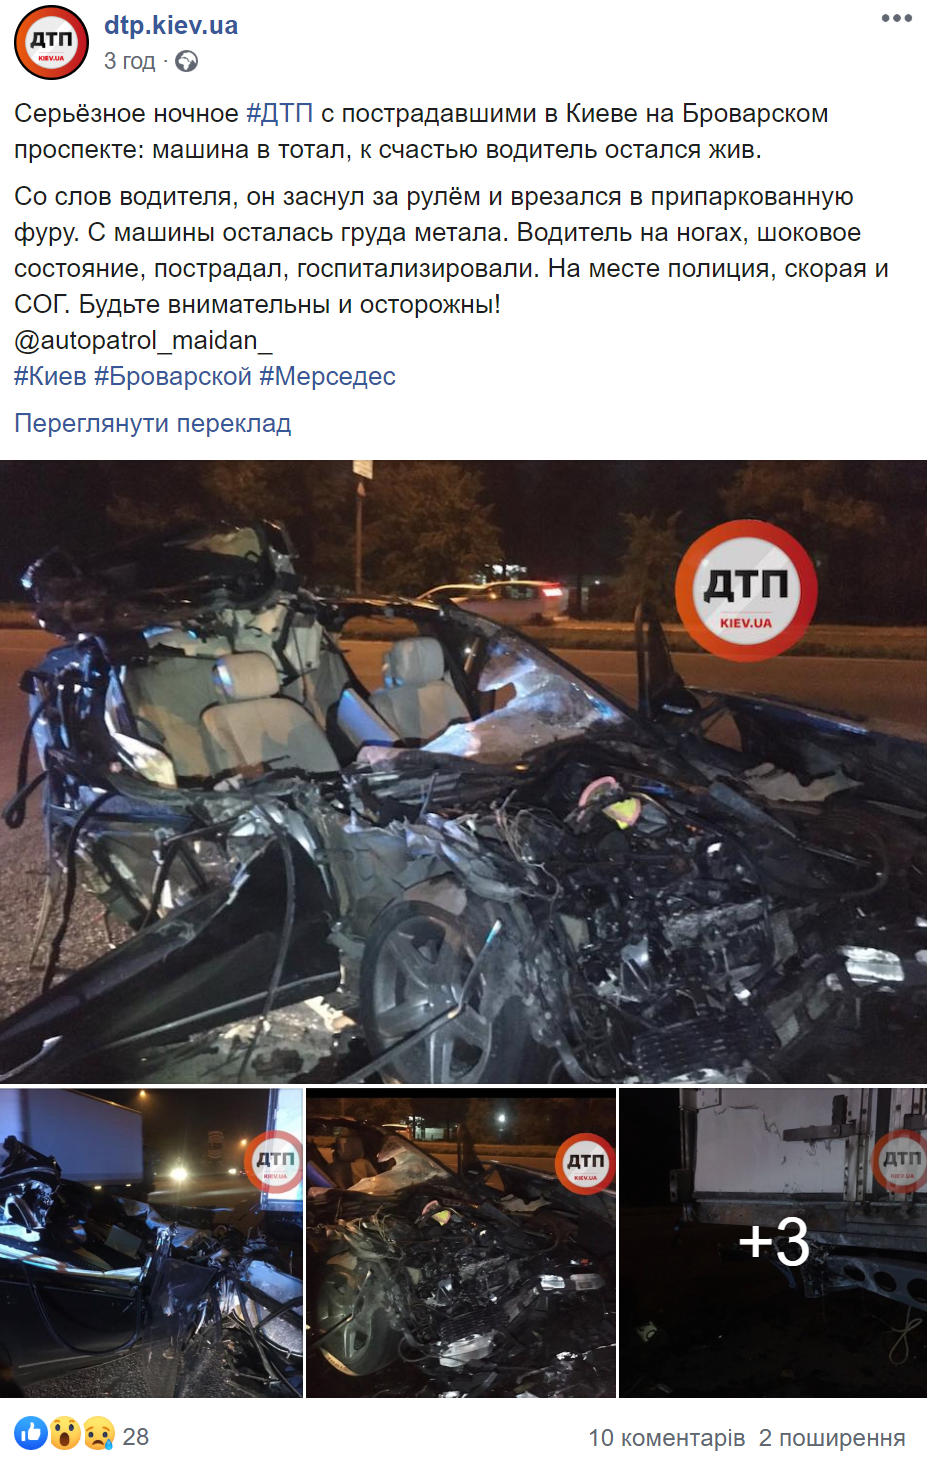 Пост в сети о ДТП в Киеве